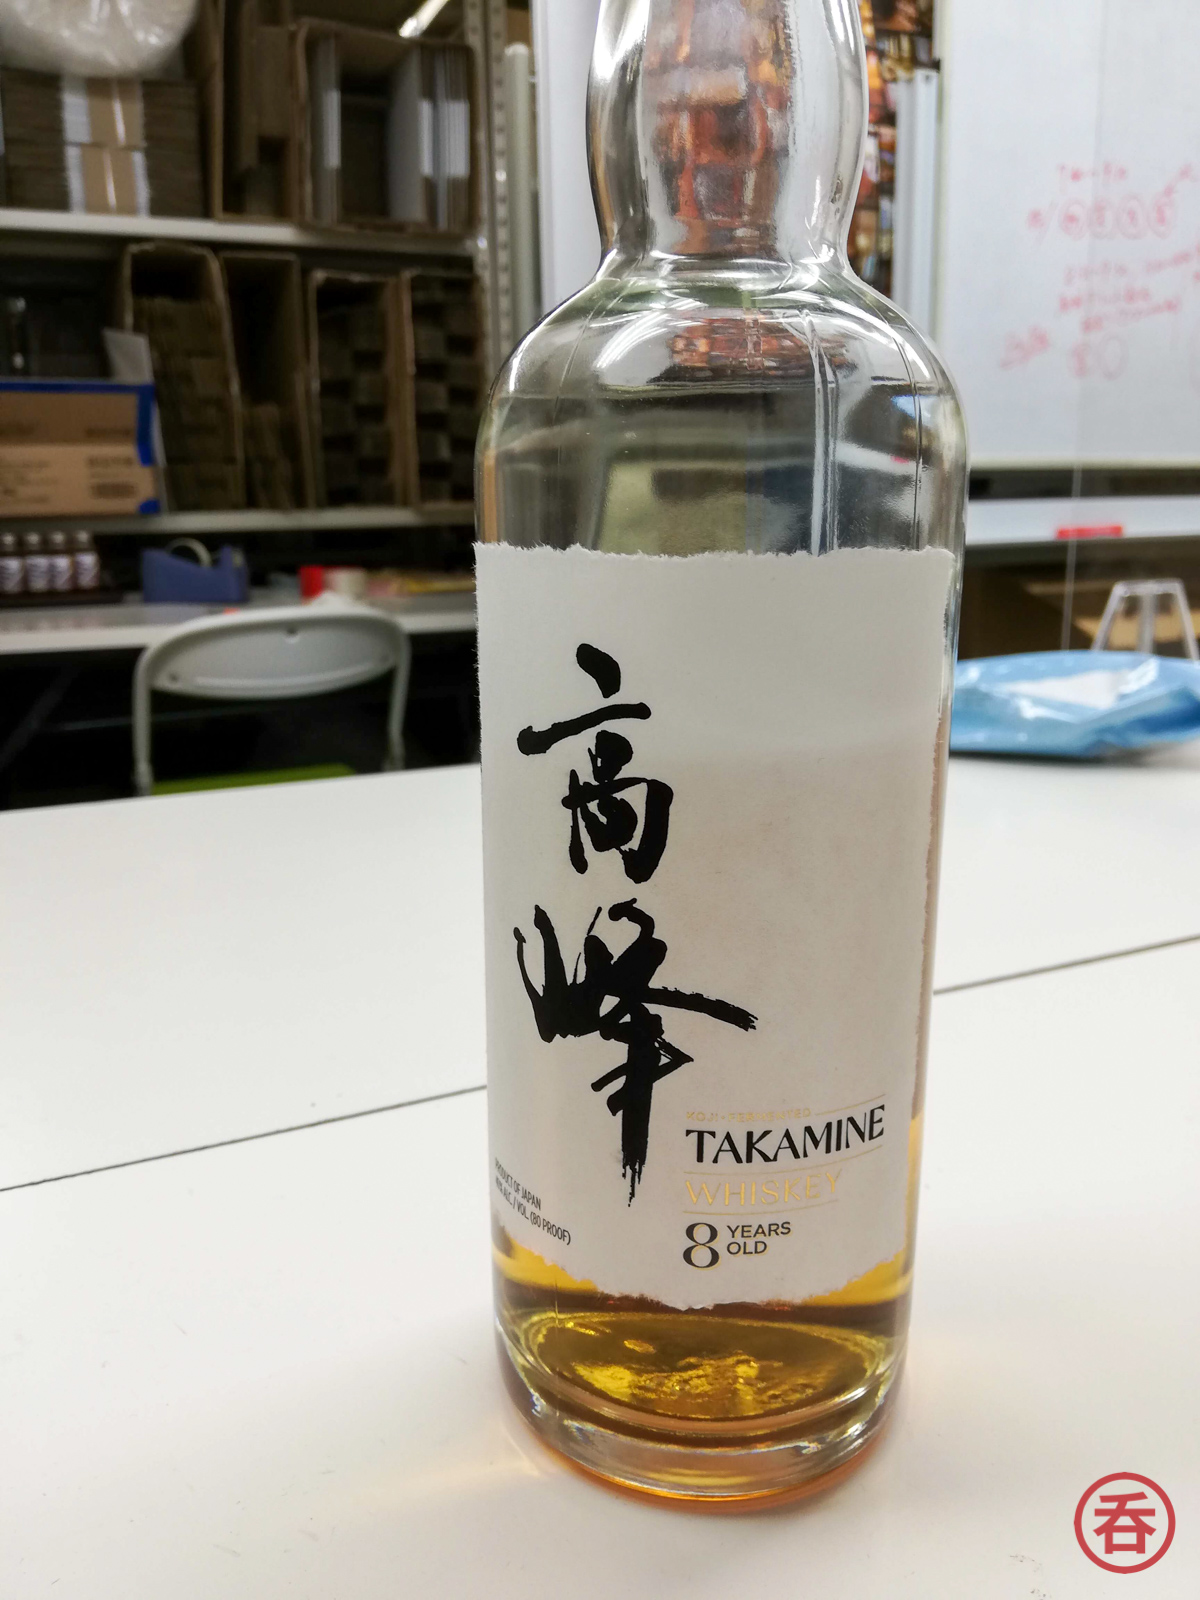 Review: Takamine Koji Whiskey - Nomunication